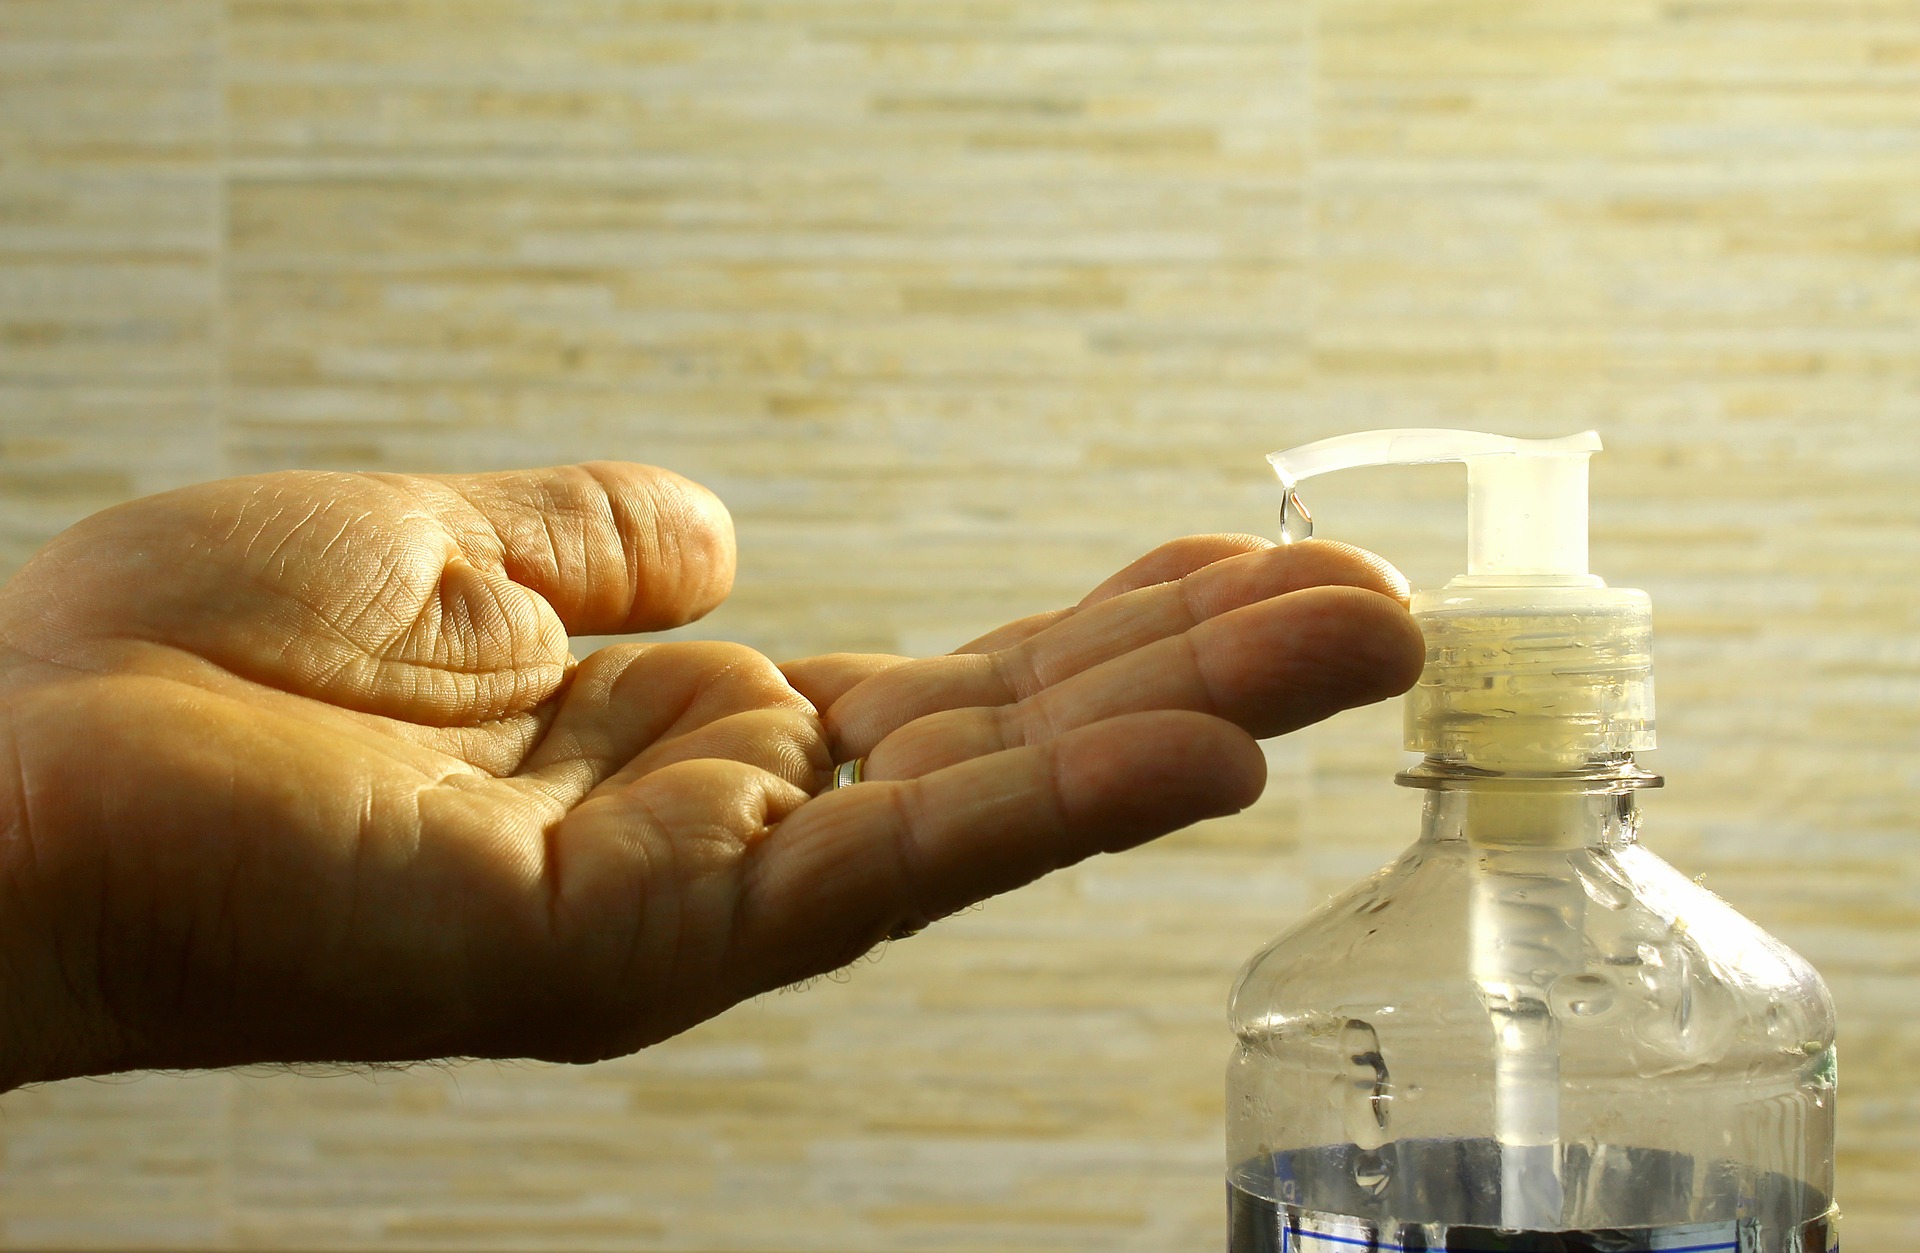 hand sanitizer gel